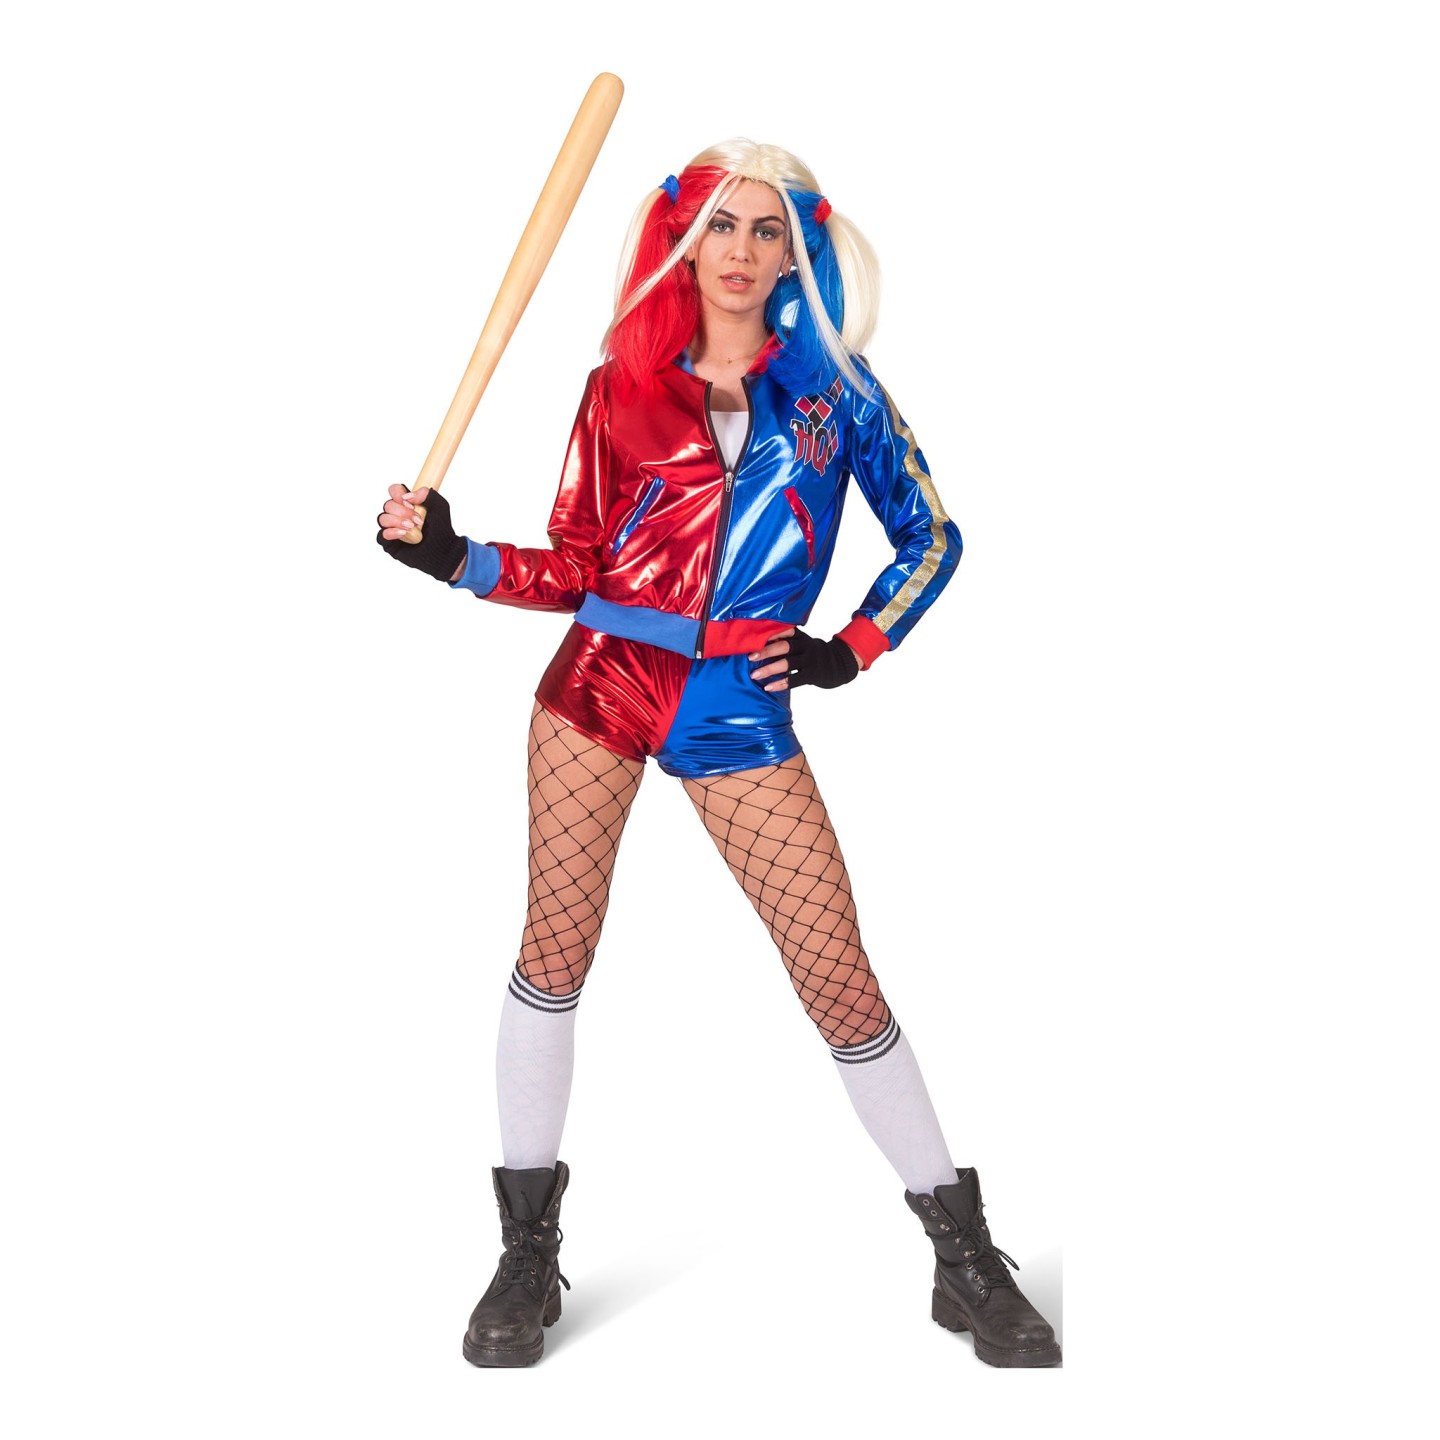 Onderverdelen methaan Maand Harley Quinn kostuum volwassenen | Jokershop.be - Verkleedkleding